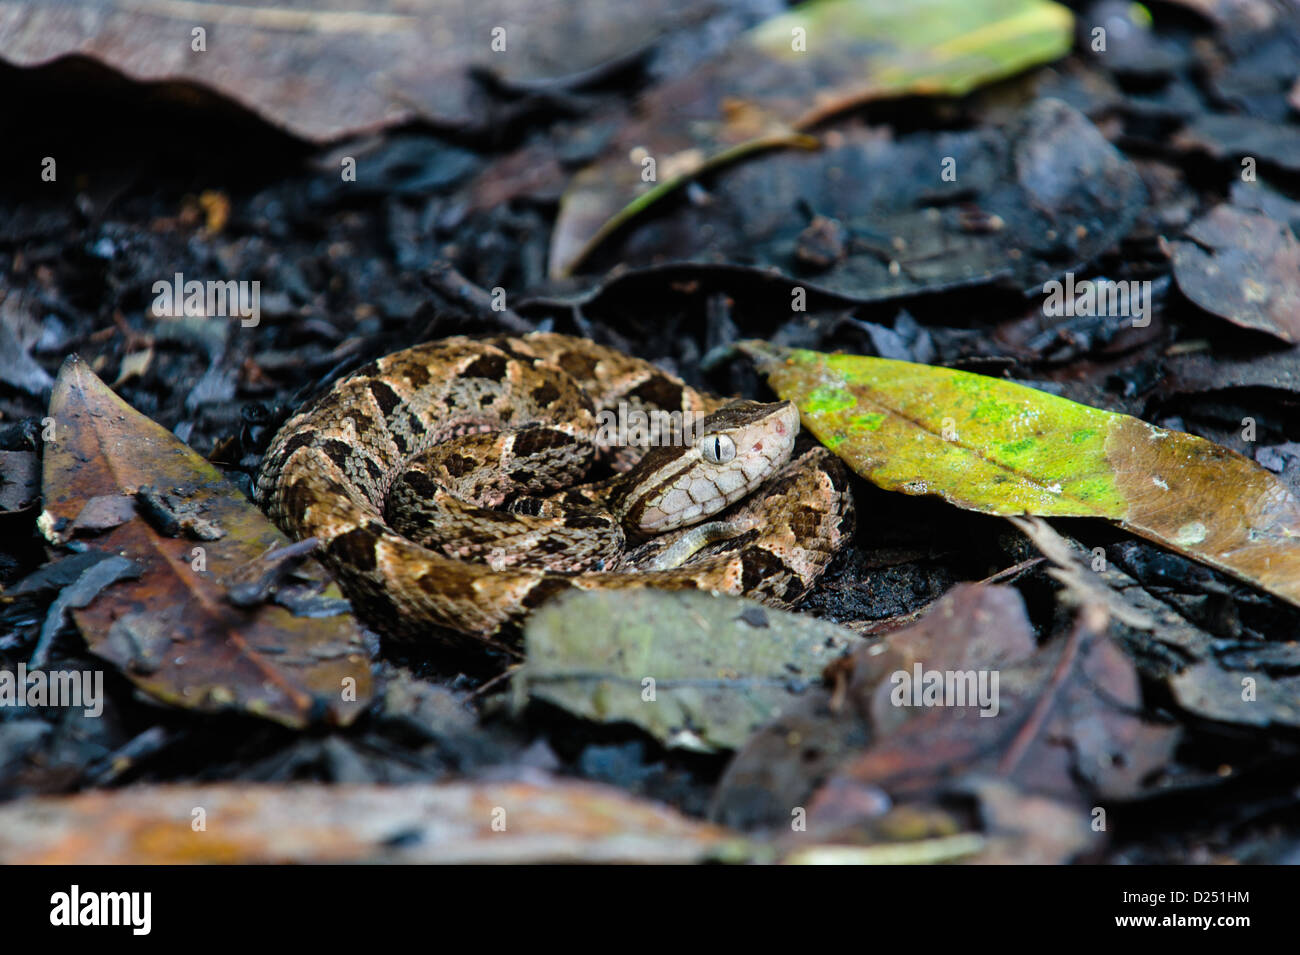 Coiled juvenile fer-de-lance (Bothrops asper), pit viper, snake amongst the leaf litter. Costa Rica Stock Photo